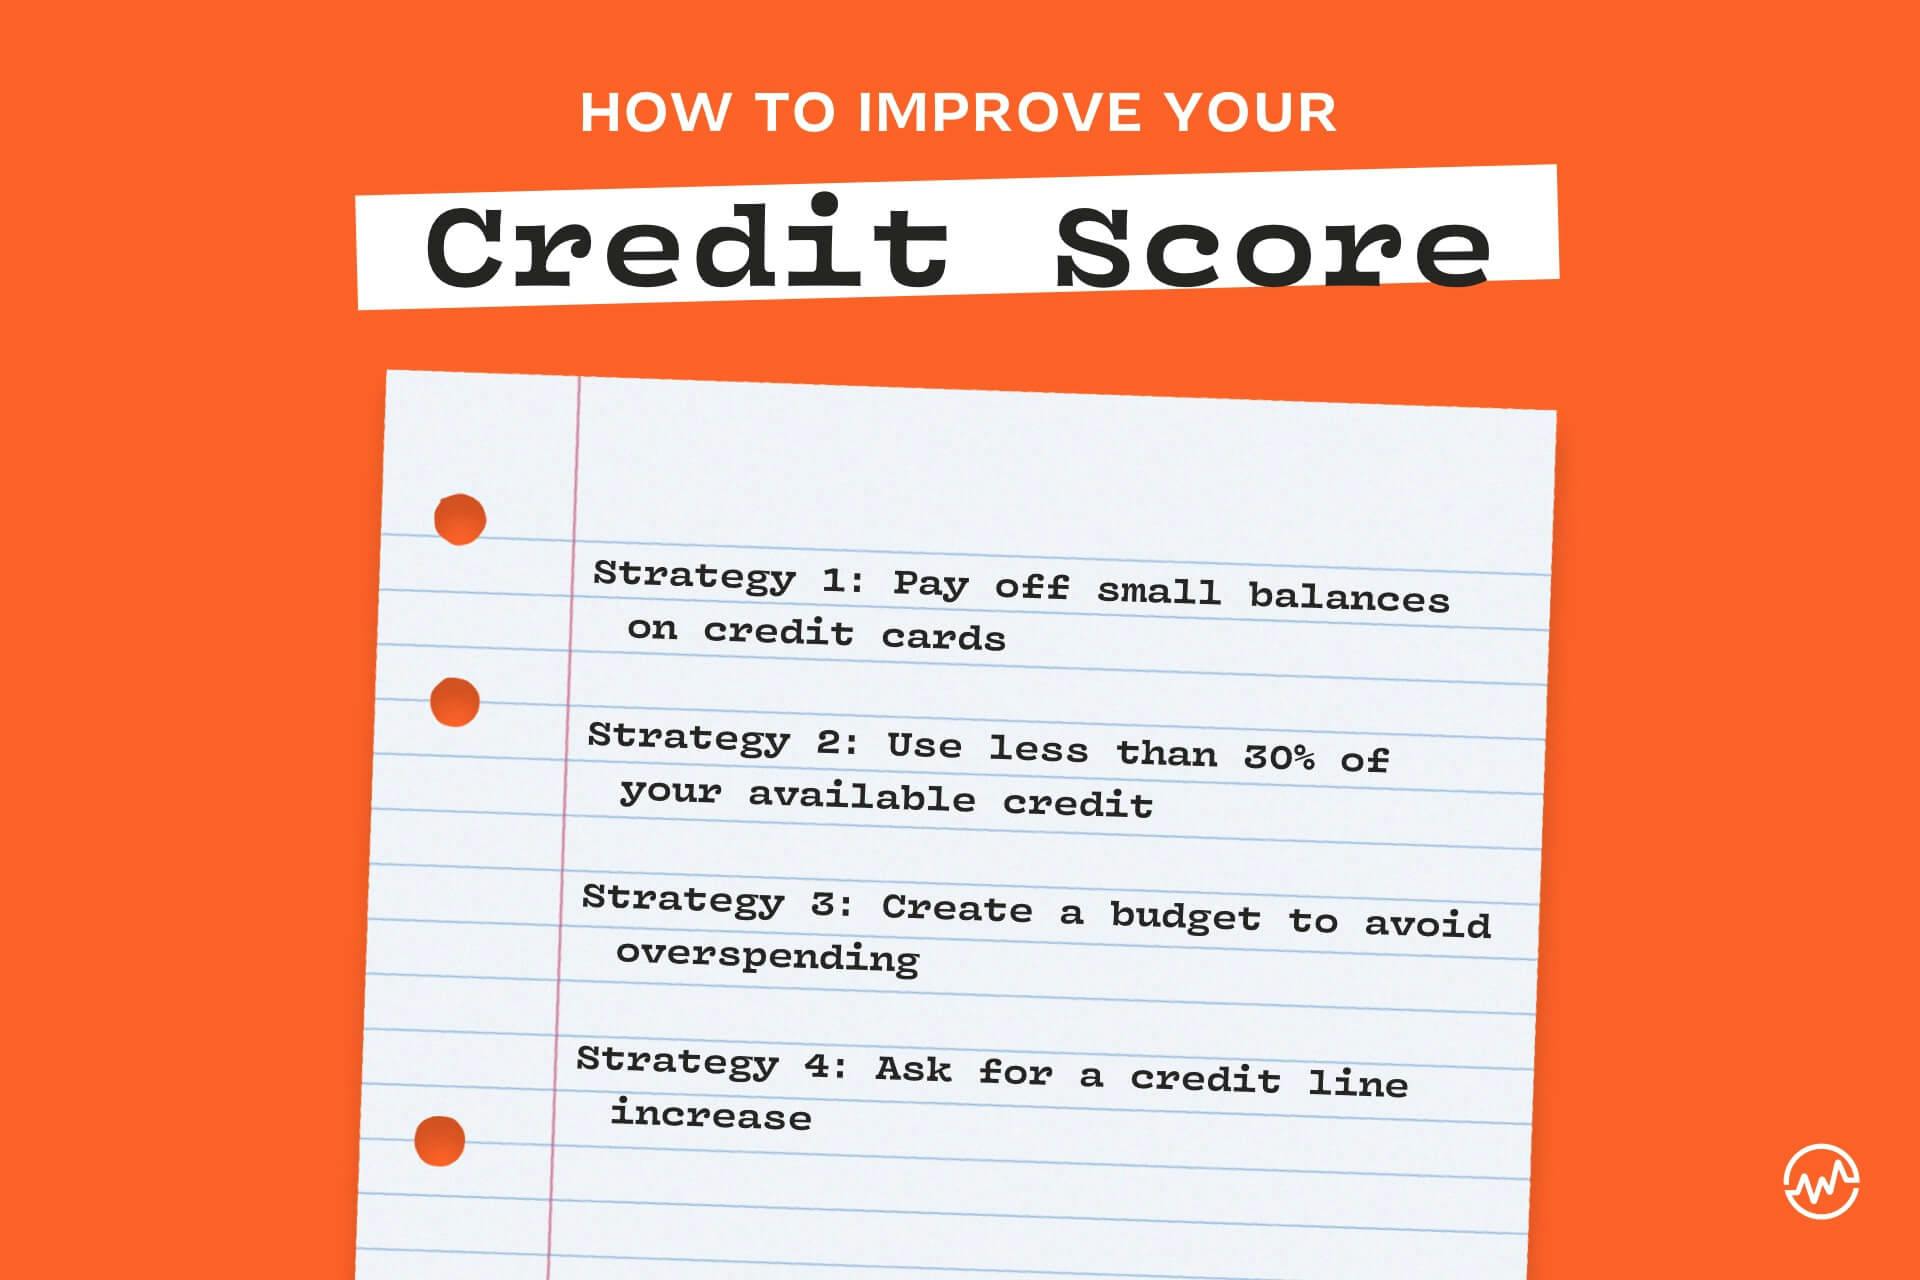  hvordan forbedre kreditt score: 4 strategier 